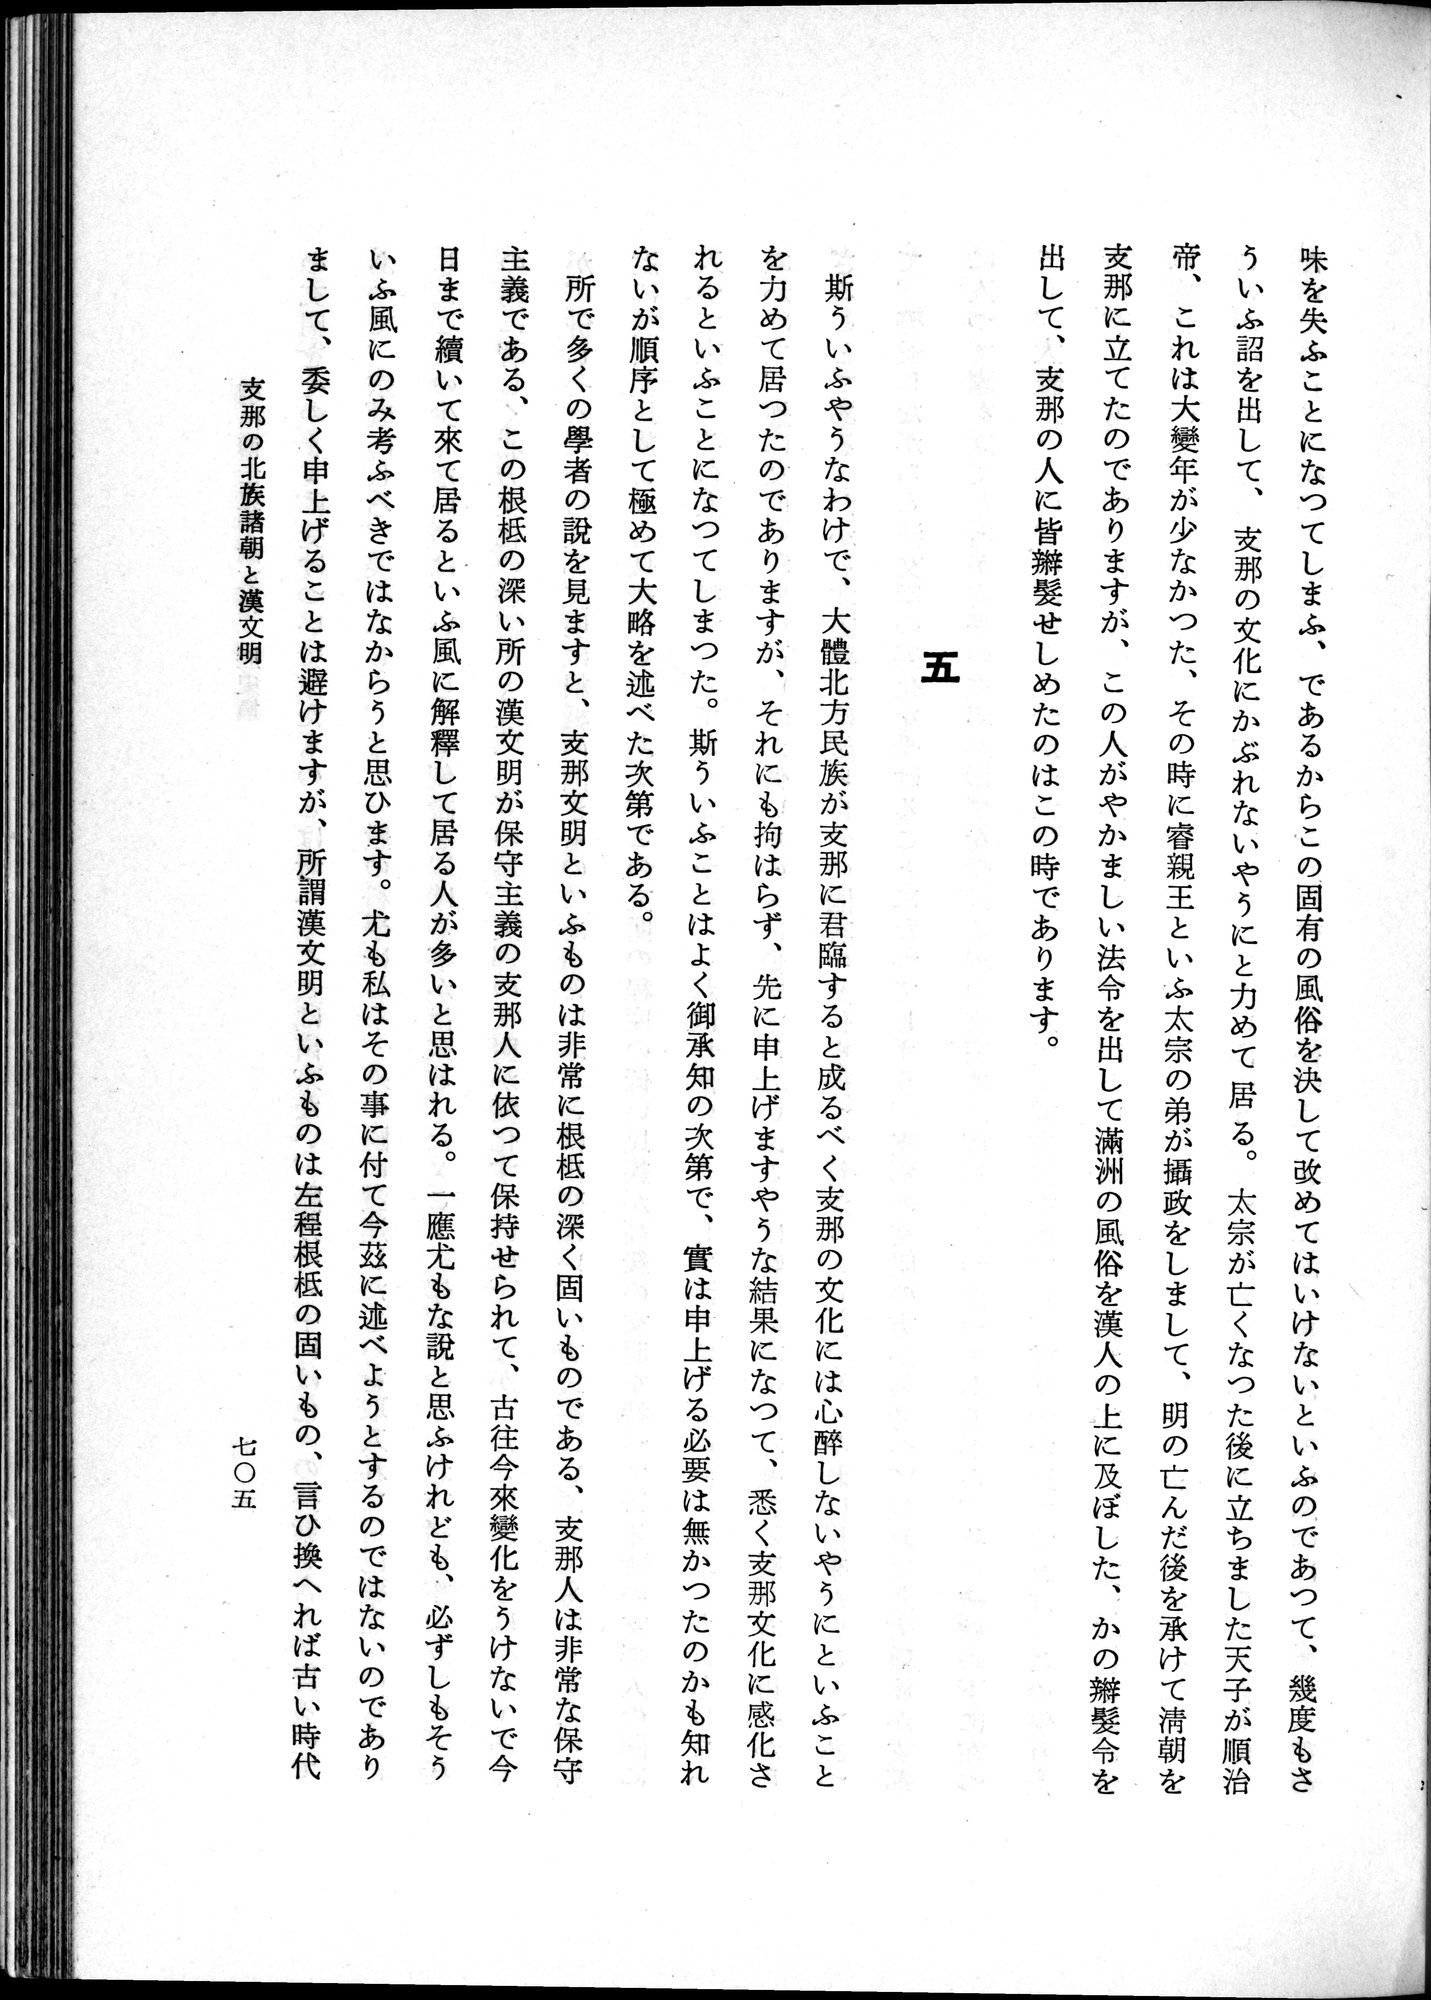 羽田博士史学論文集 : vol.1 / Page 743 (Grayscale High Resolution Image)